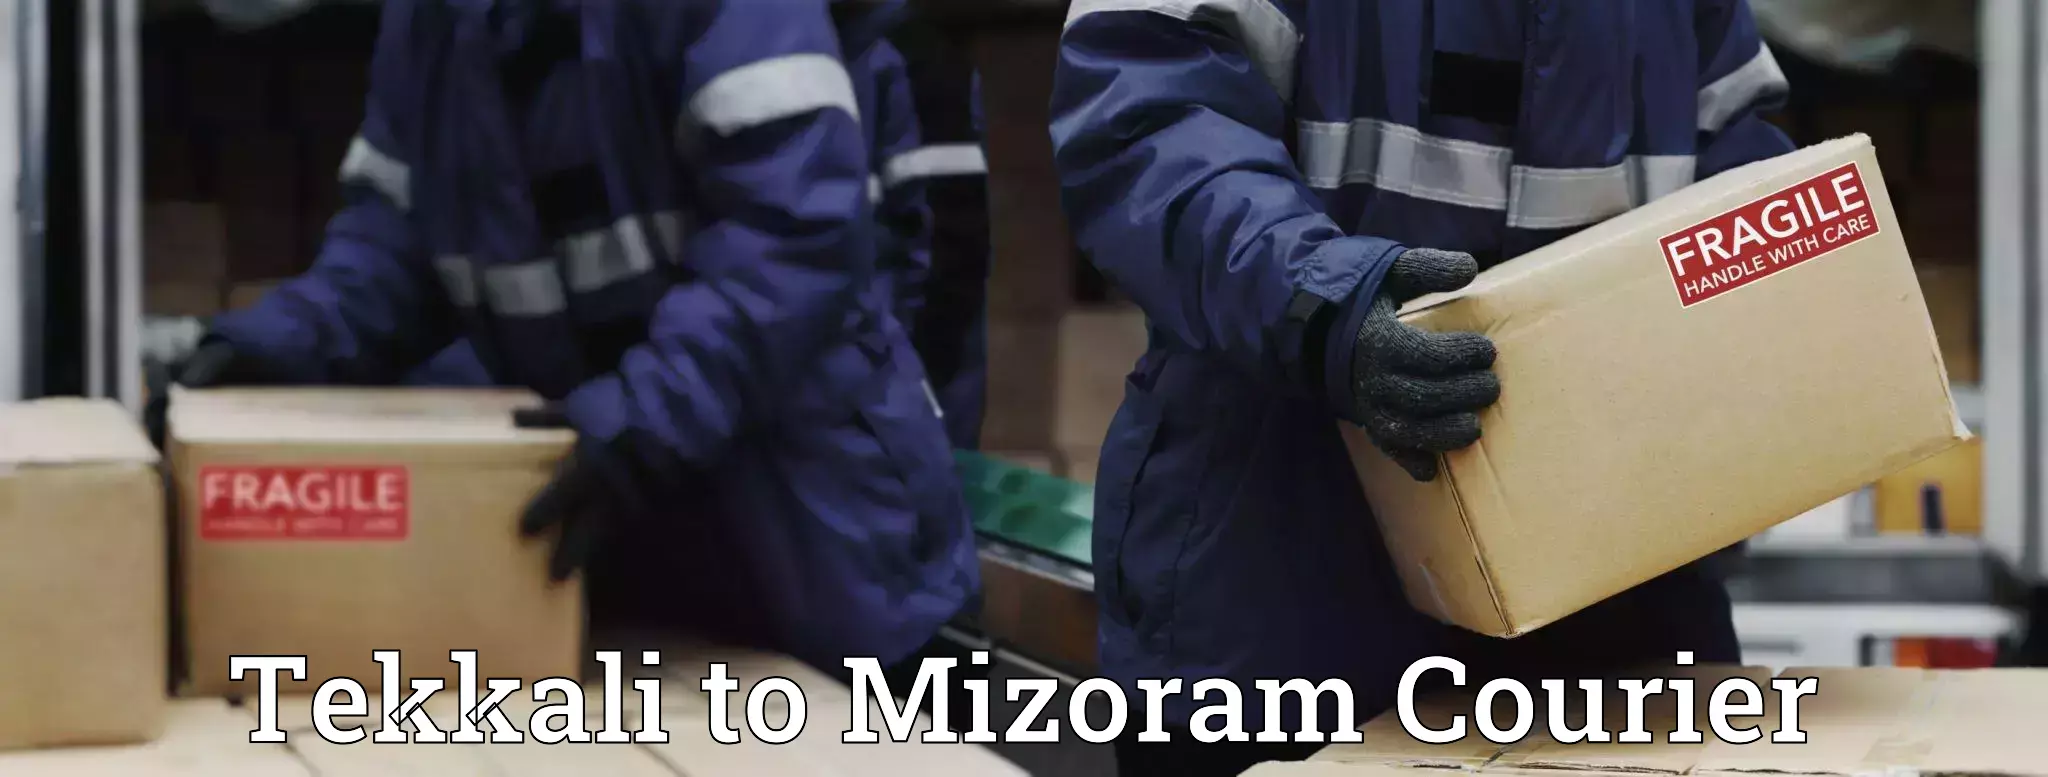 Multi-carrier shipping Tekkali to Mizoram